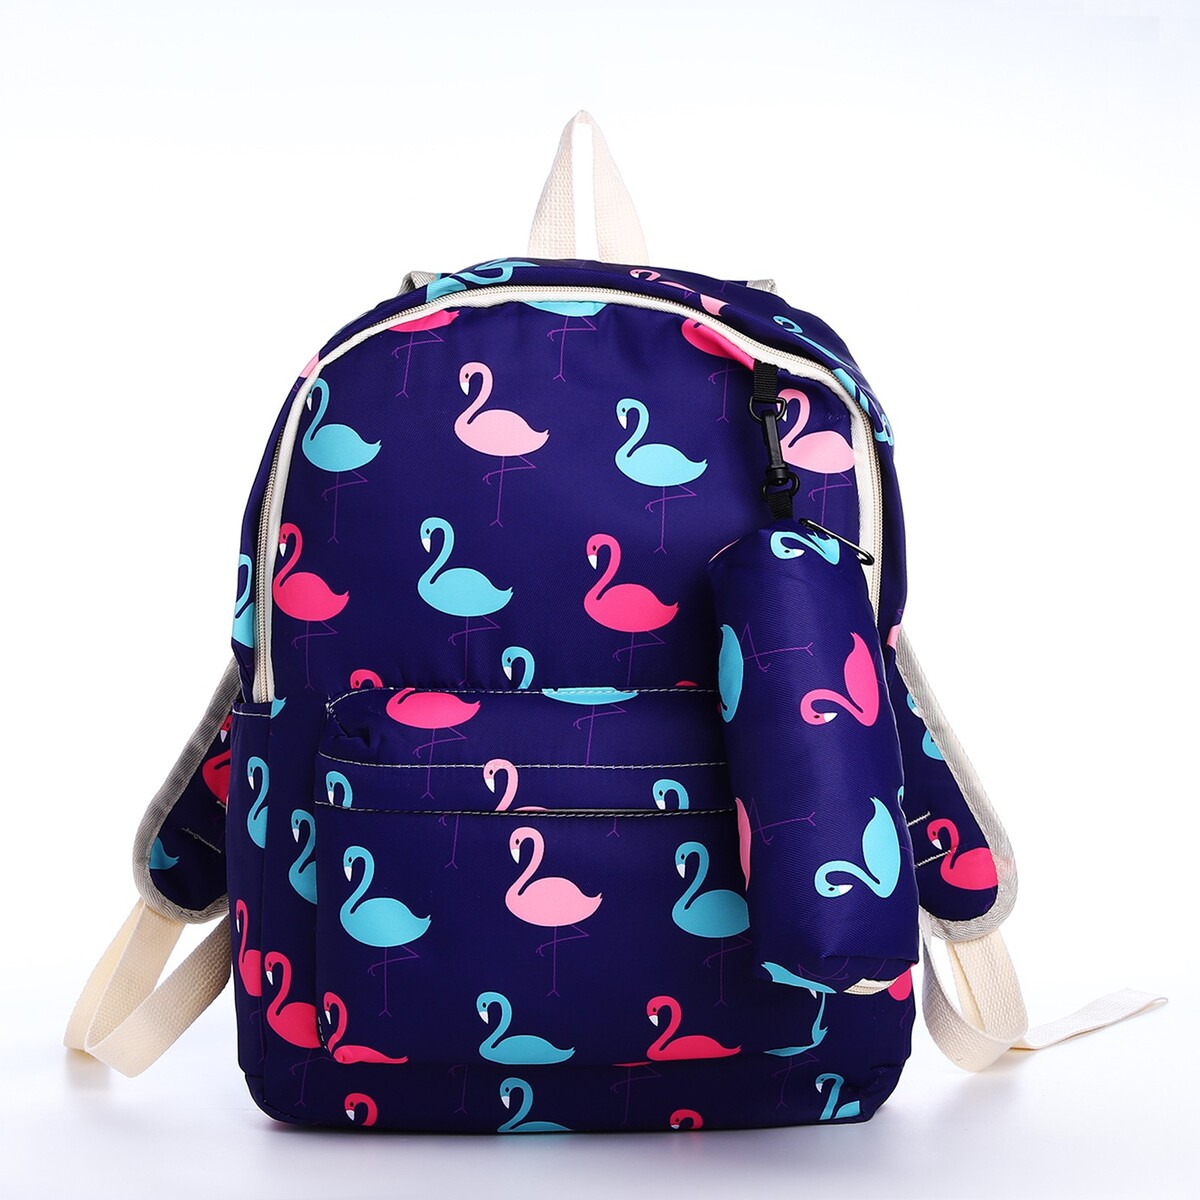 Рюкзак школьный из текстиля на молнии, 3 кармана, пенал, цвет фиолетовый рюкзак школьный из текстиля на молнии 3 кармана пенал фиолетовый